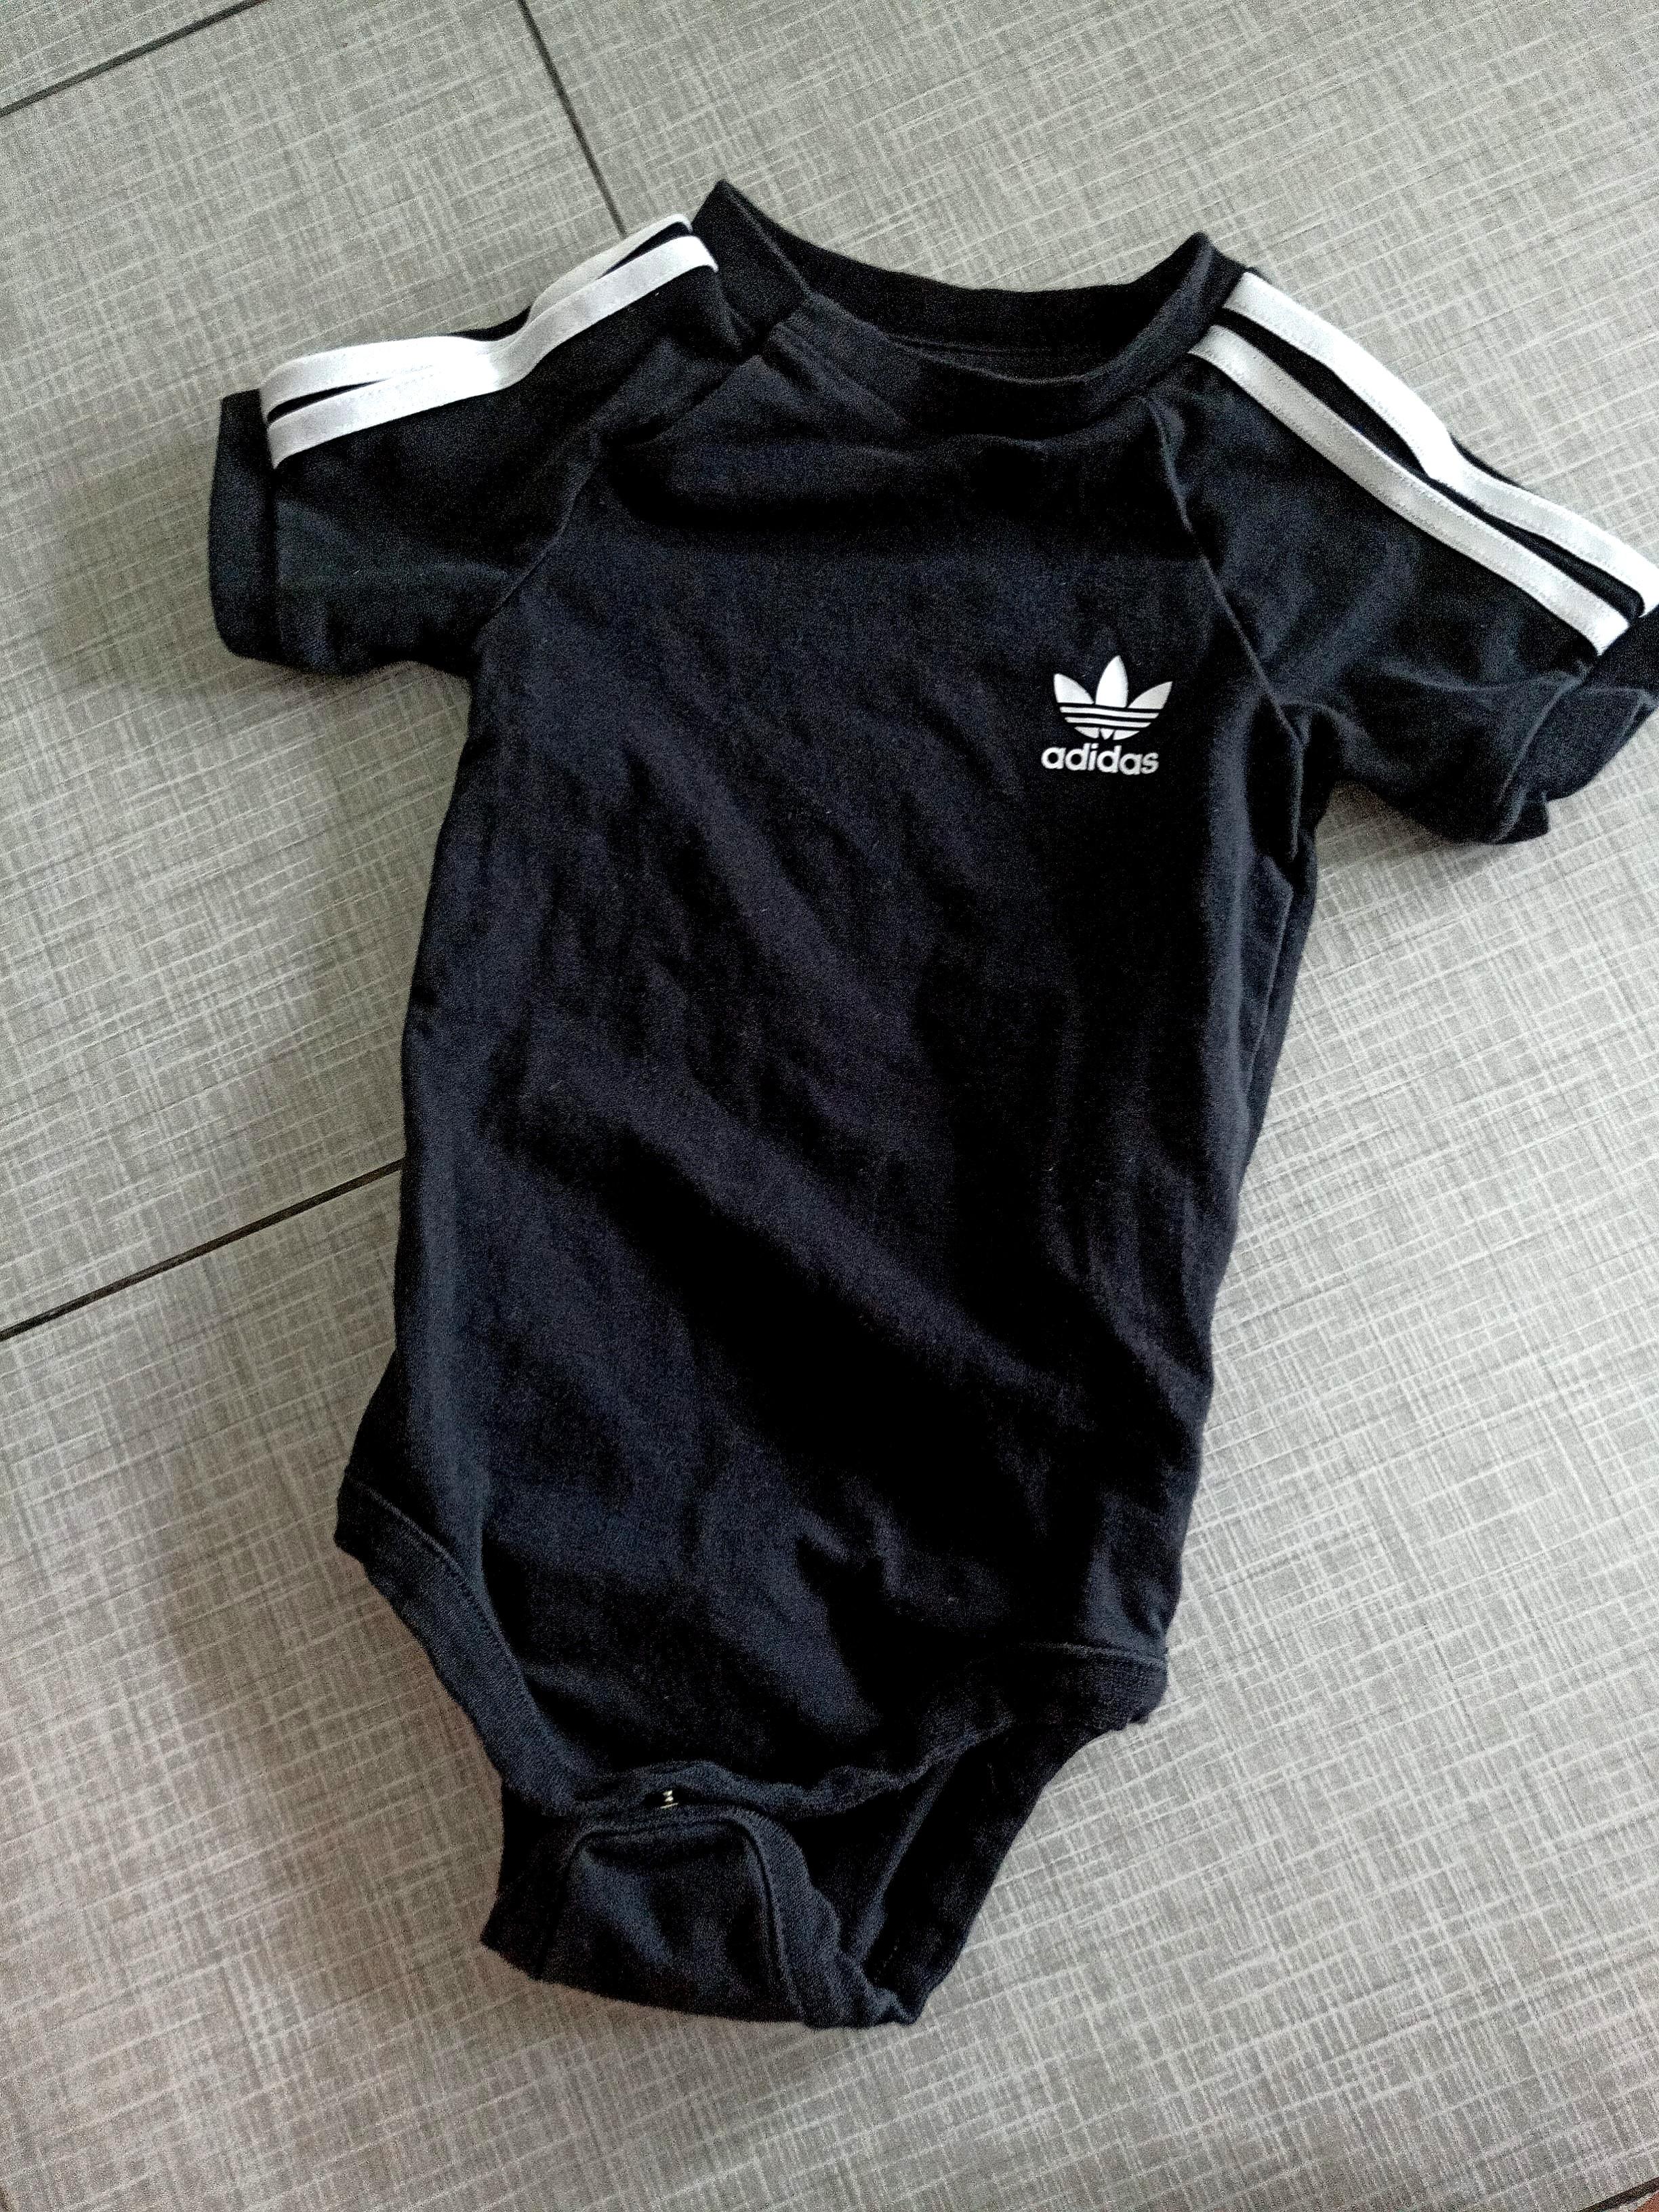 infant adidas jumpsuit